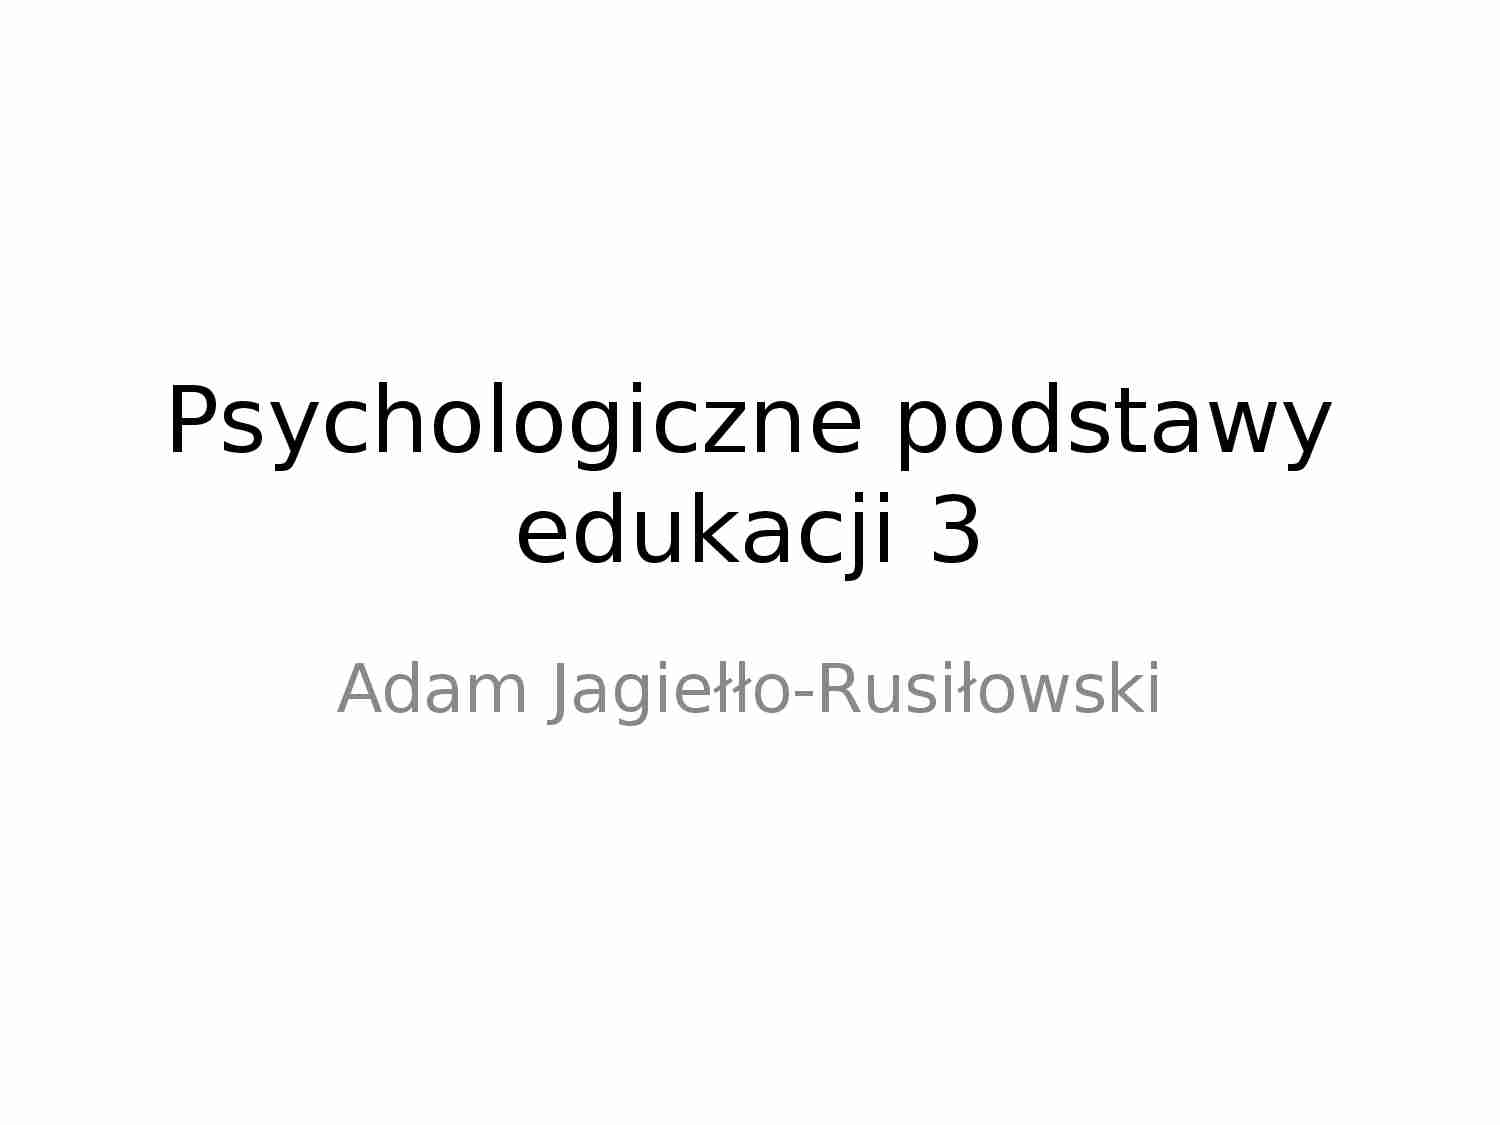 Psychologiczne podstawy edukacji 3 - prezentacja - strona 1